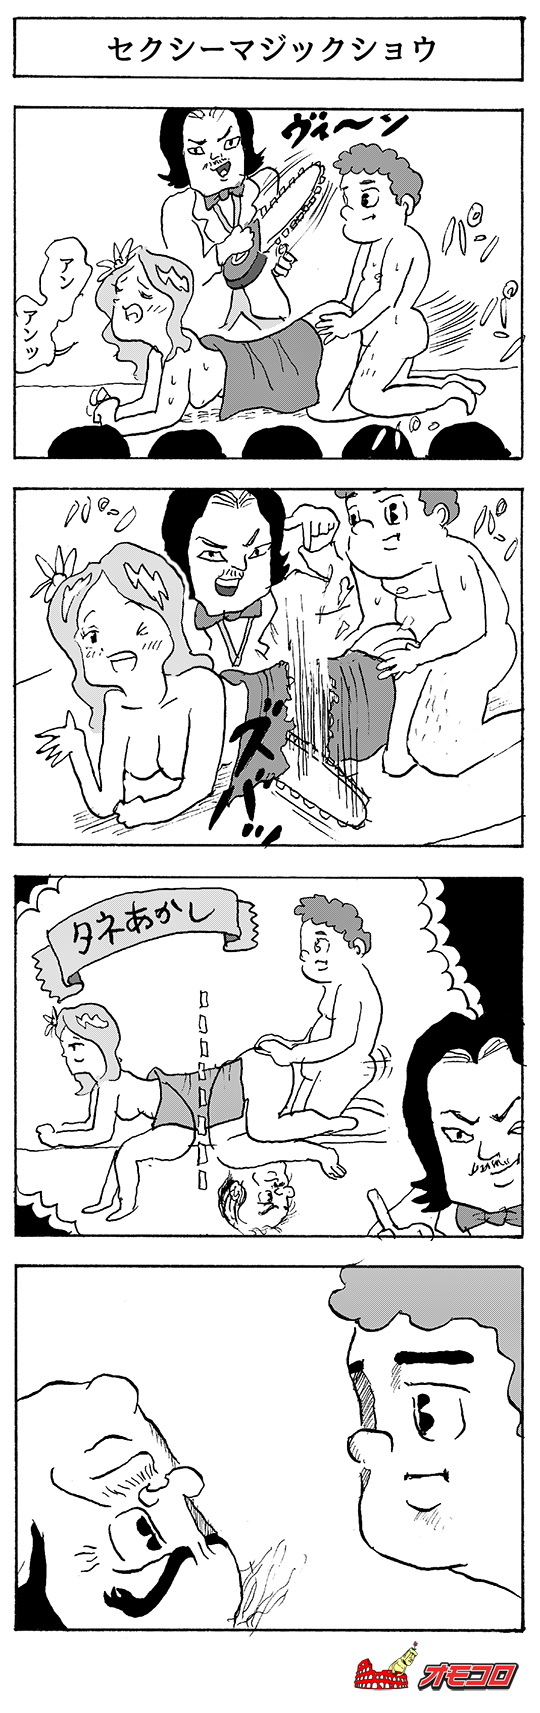 【4コマ漫画】セクシーマジックショウ